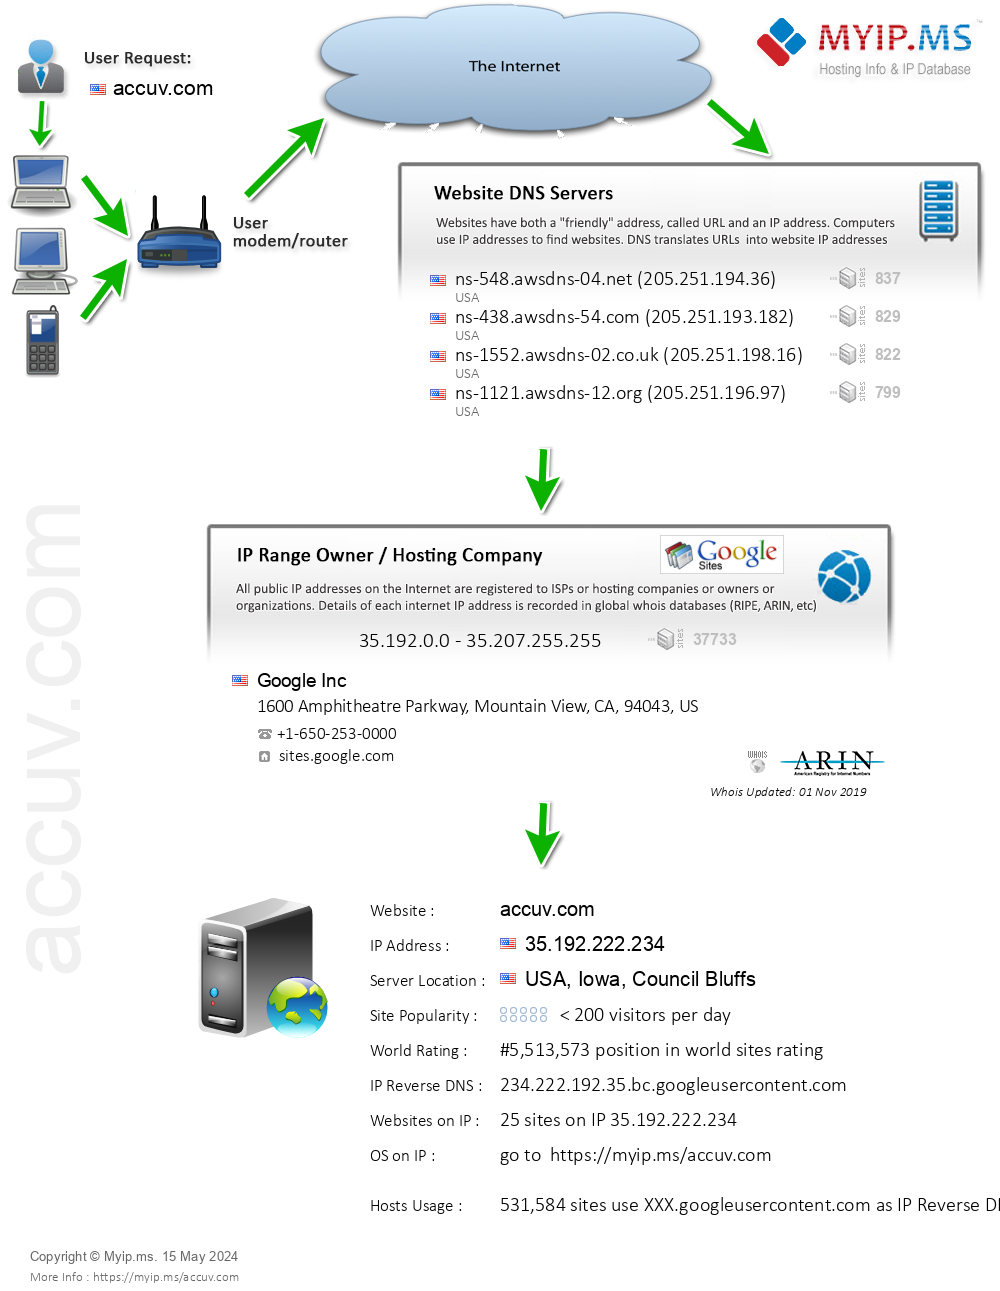 Accuv.com - Website Hosting Visual IP Diagram